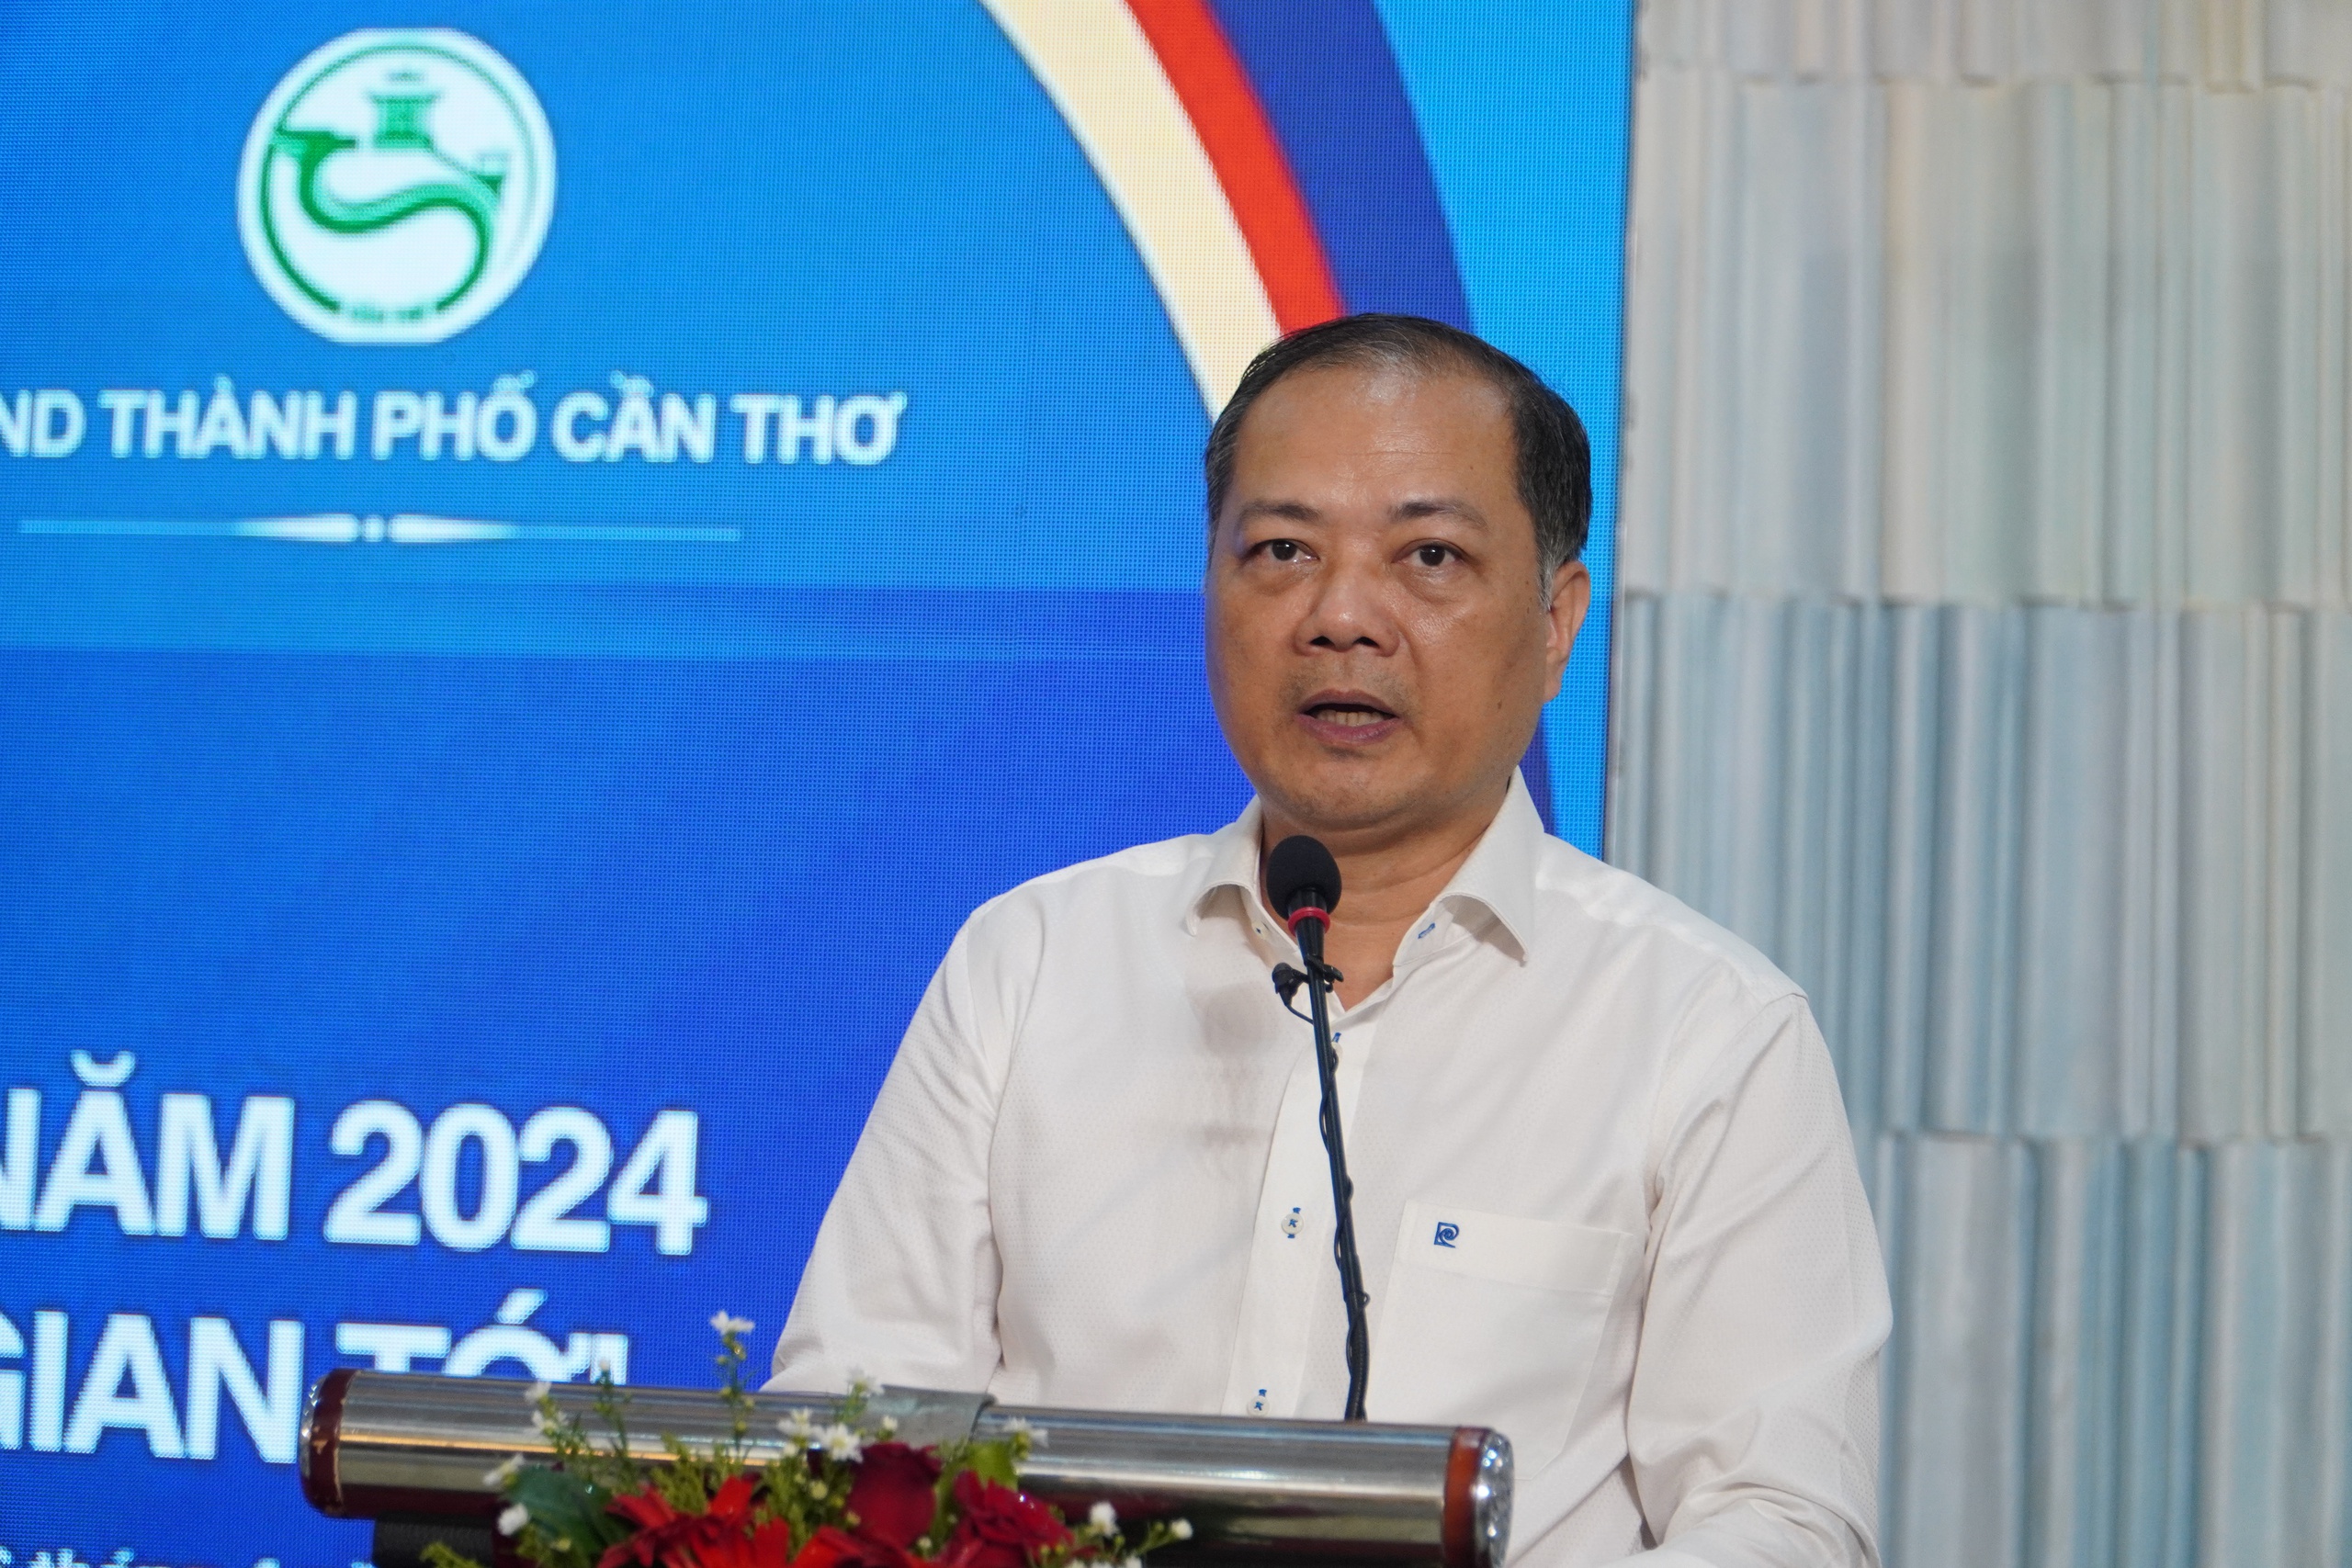 Dự báo thế giới thiếu hụt 7 triệu tấn gạo trong năm 2024, cơ hội lớn cho xuất khẩu gạo của Việt Nam- Ảnh 1.